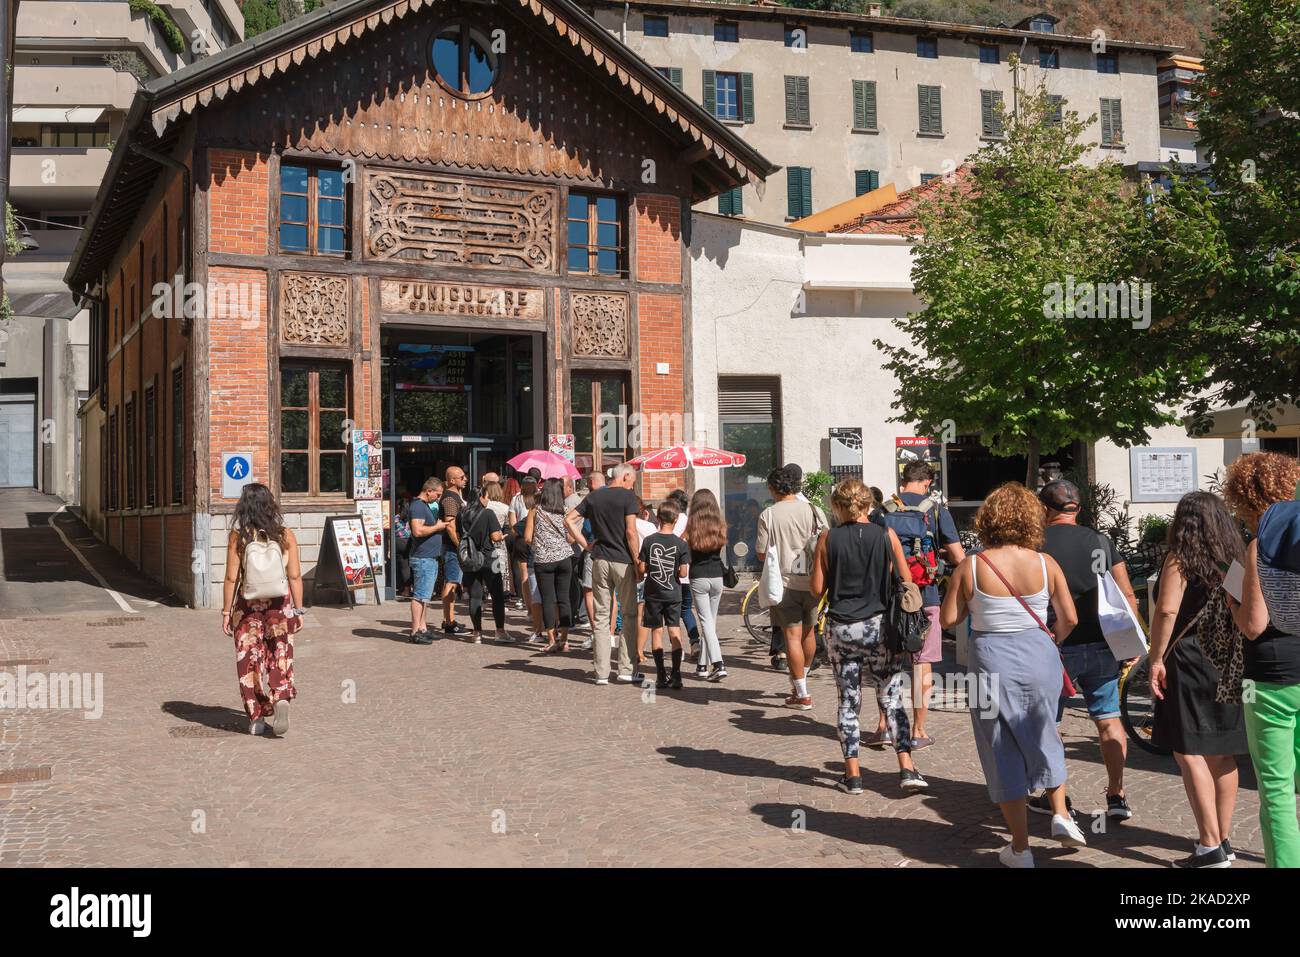 Funicolare della città di Como, vista delle persone che fanno la fila alla stazione funicolare di Como - Brunate nella città di Como, Lombardia, Italia Foto Stock